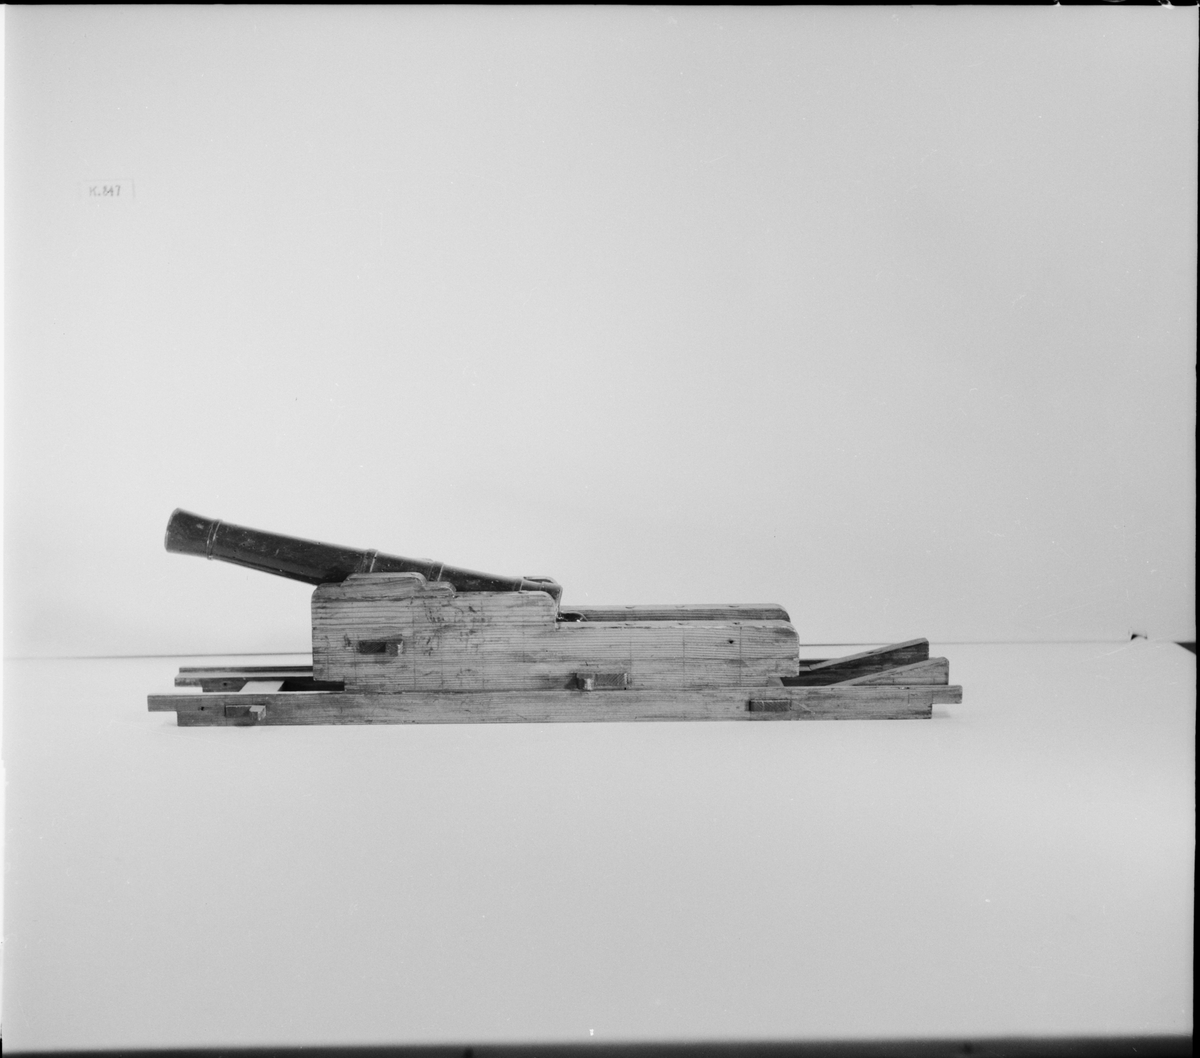 Kanonmodell: 18-pundig blälklavett av Ehrensvärds modell, av trä, med kanon. Lavett L = 560 mm B = 120 mm H = 105 mm.